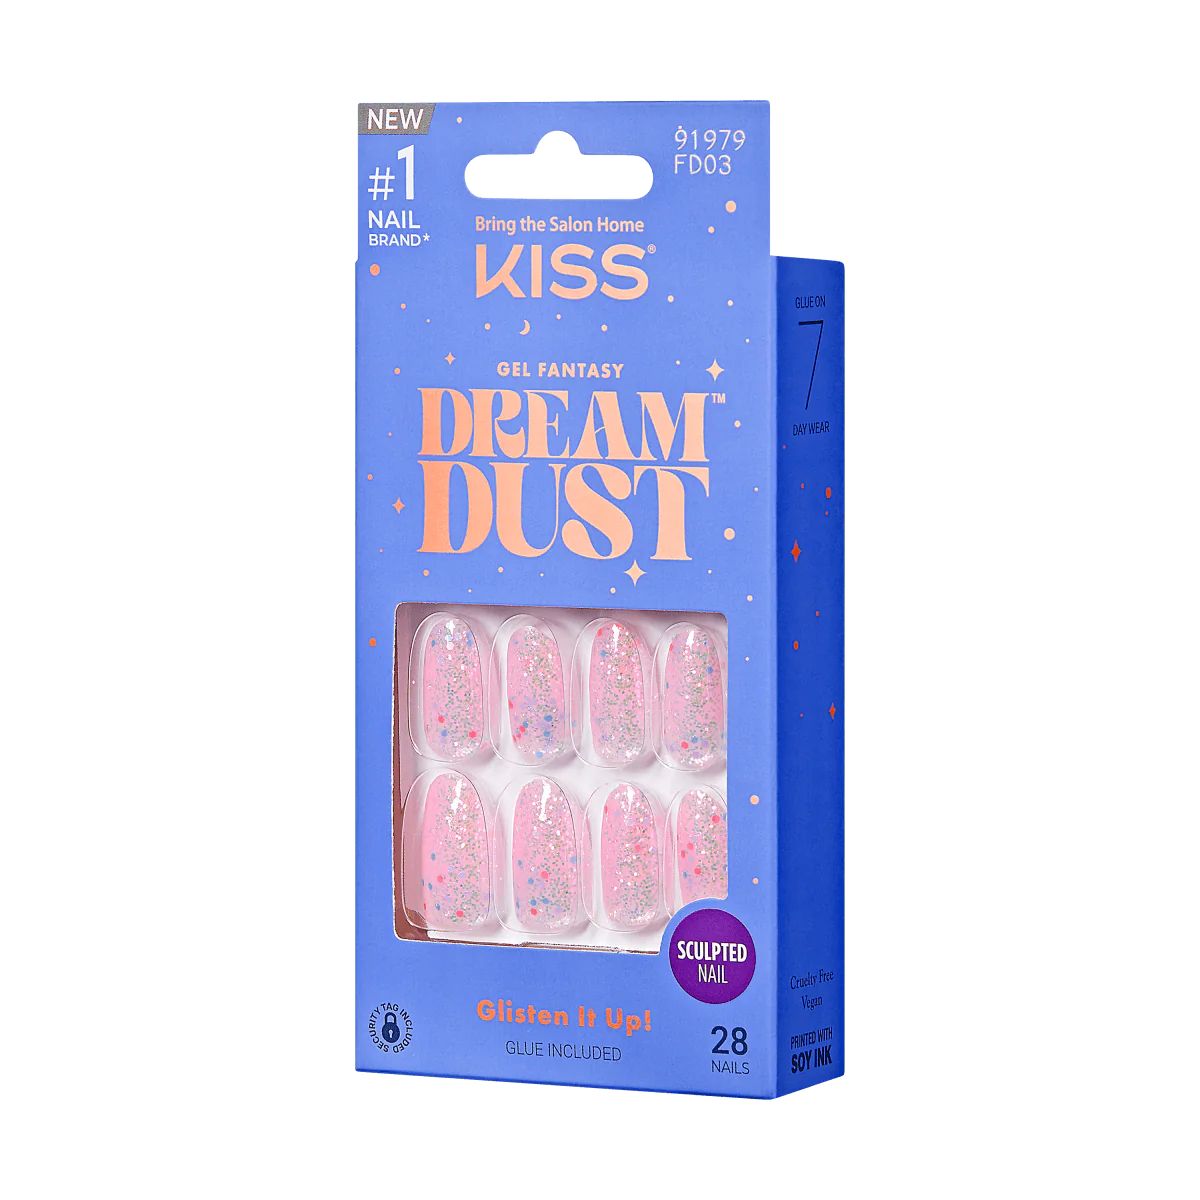 KISS Gel Fantasy Dreamdust Press-On Nails, ‘Diamonds 4 Me’, Pink, Medium Oval, 31 Ct. | KISS, imPRESS, JOAH